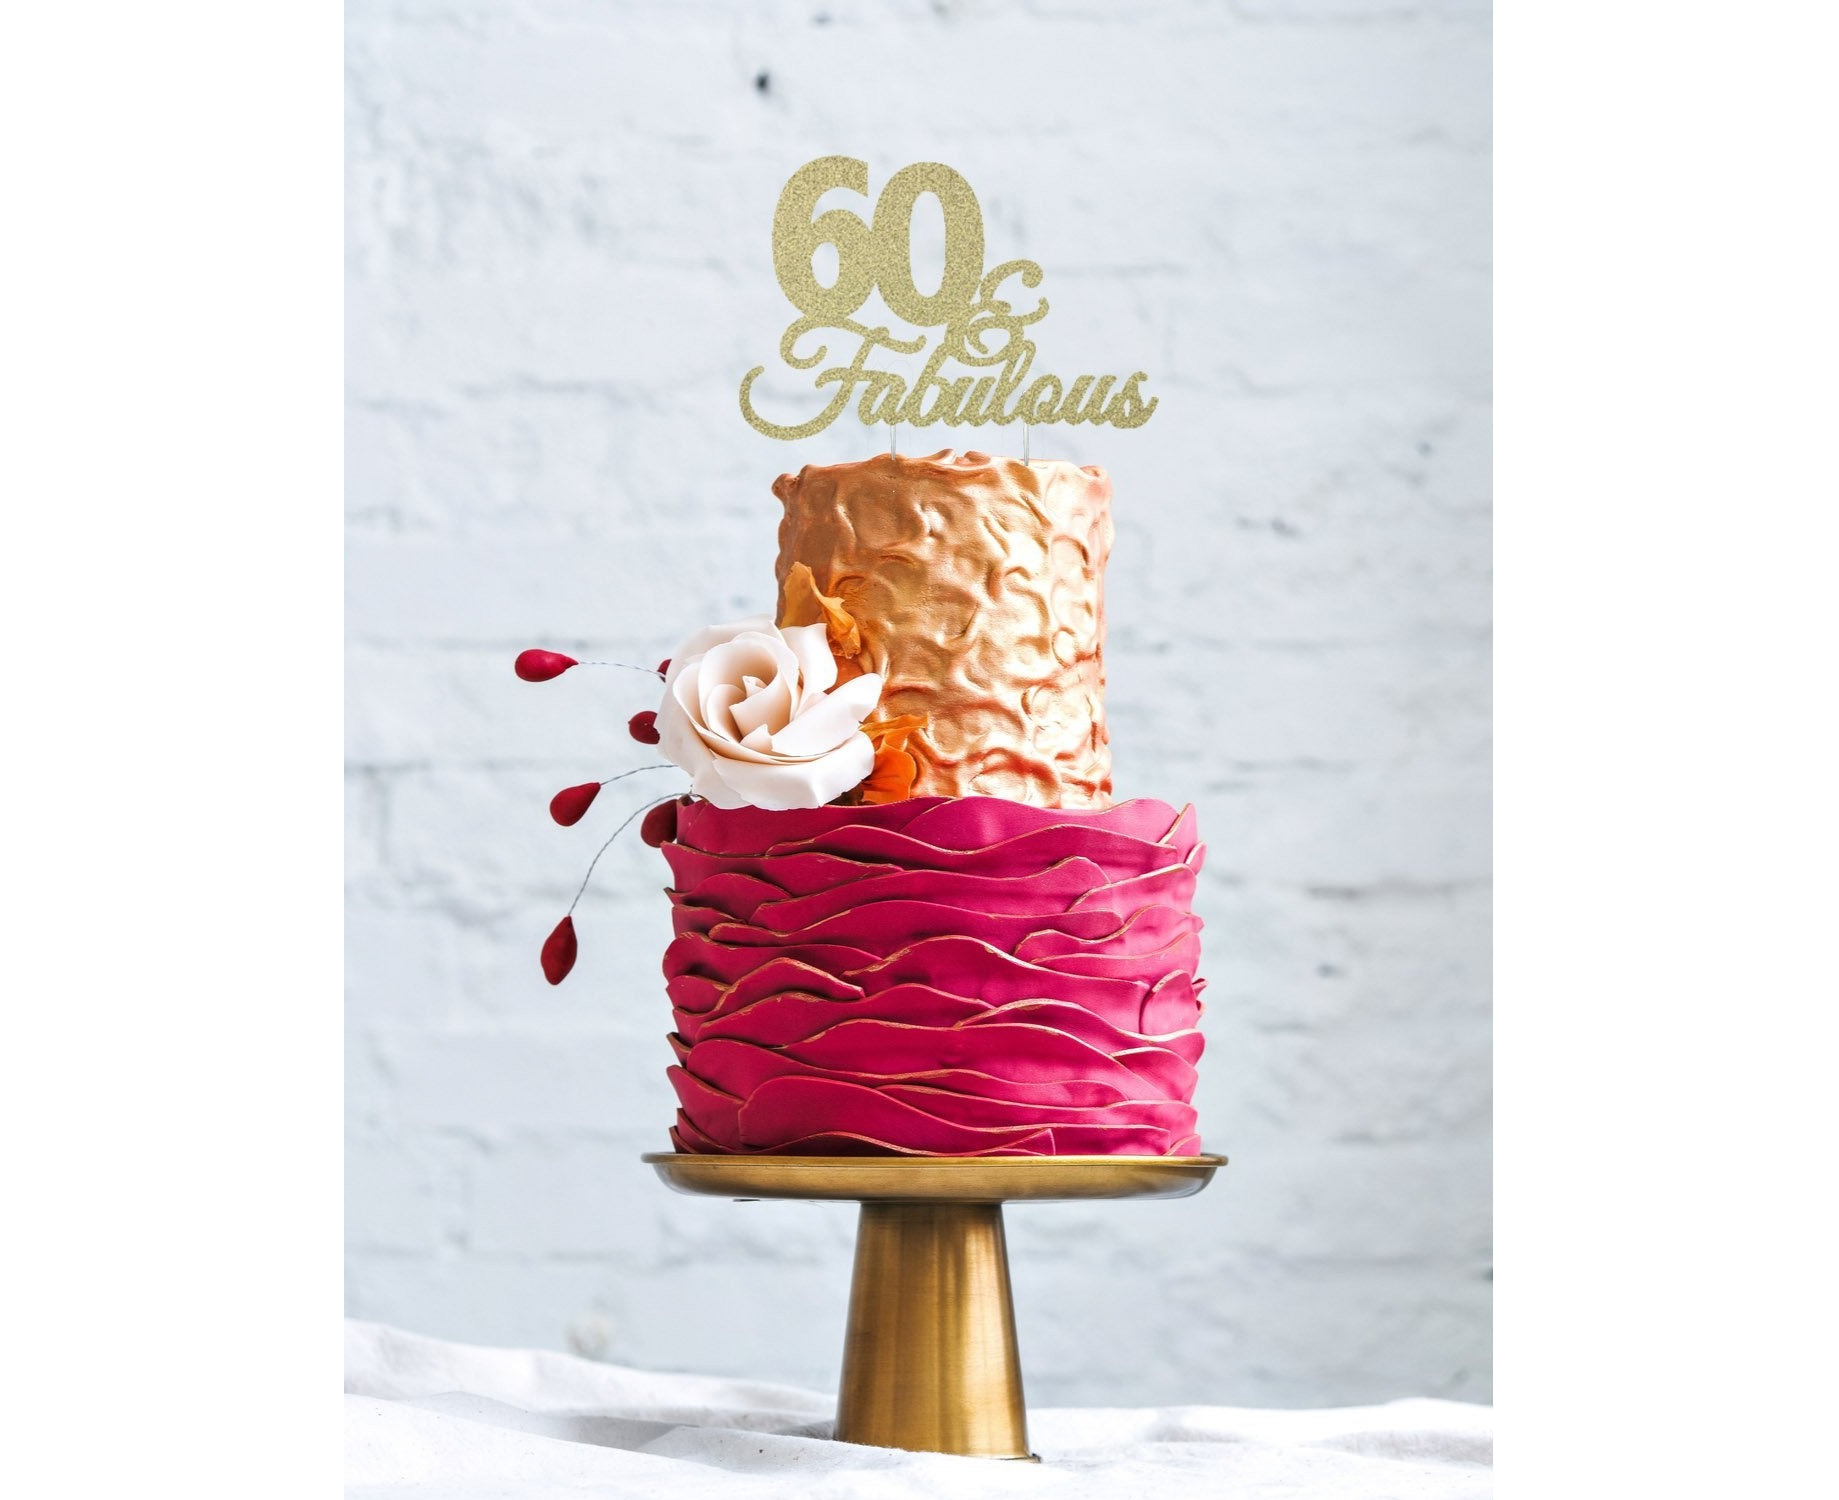 60th Birthday Cake | 60th birthday cakes, Birthday cake for mom, Mom cake